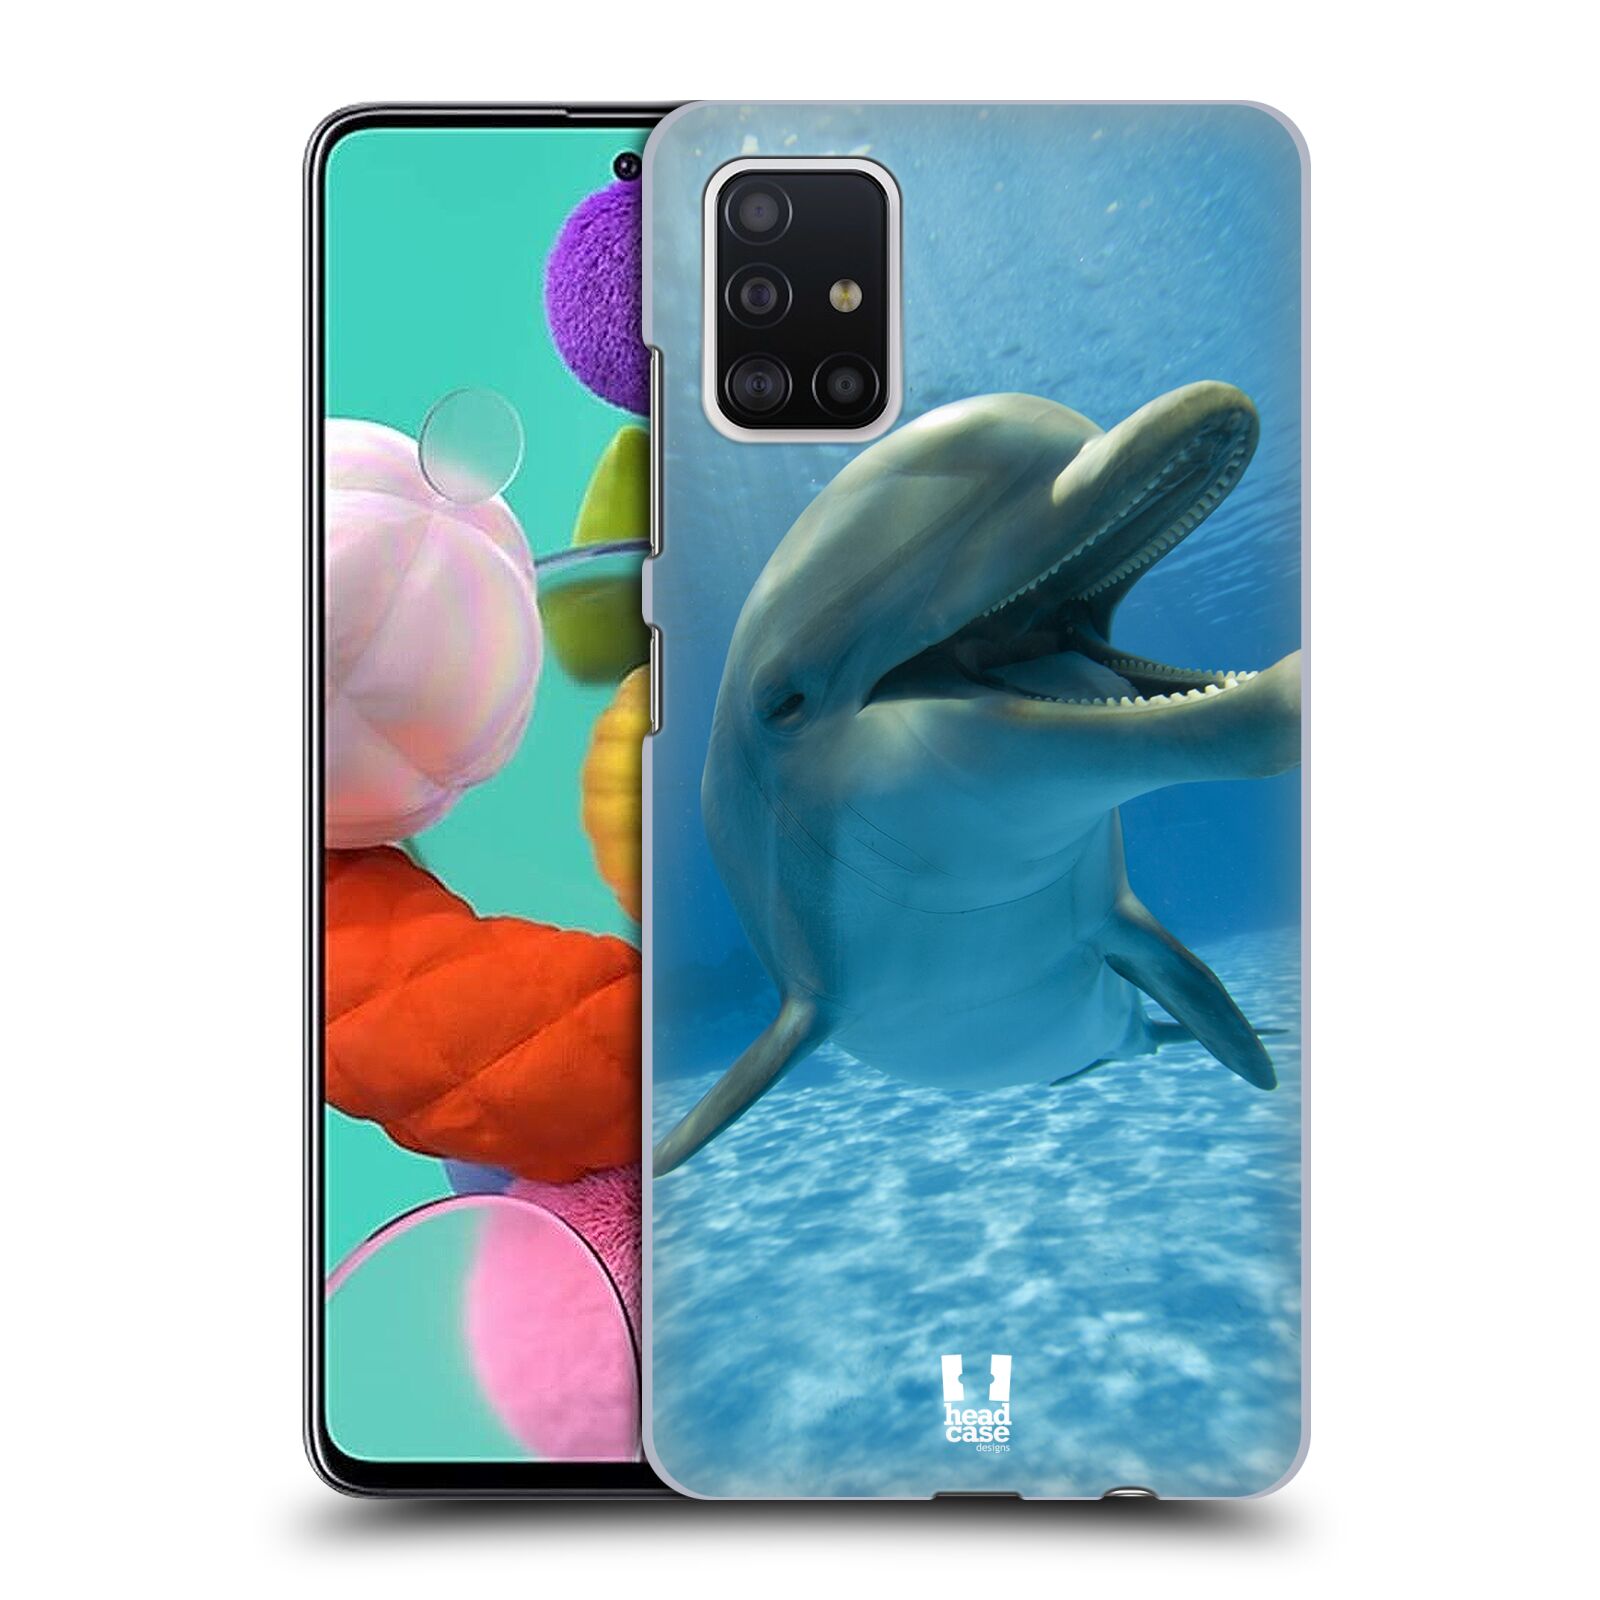 Zadní obal pro mobil Samsung Galaxy A51 - HEAD CASE - Svět zvířat delfín v moři